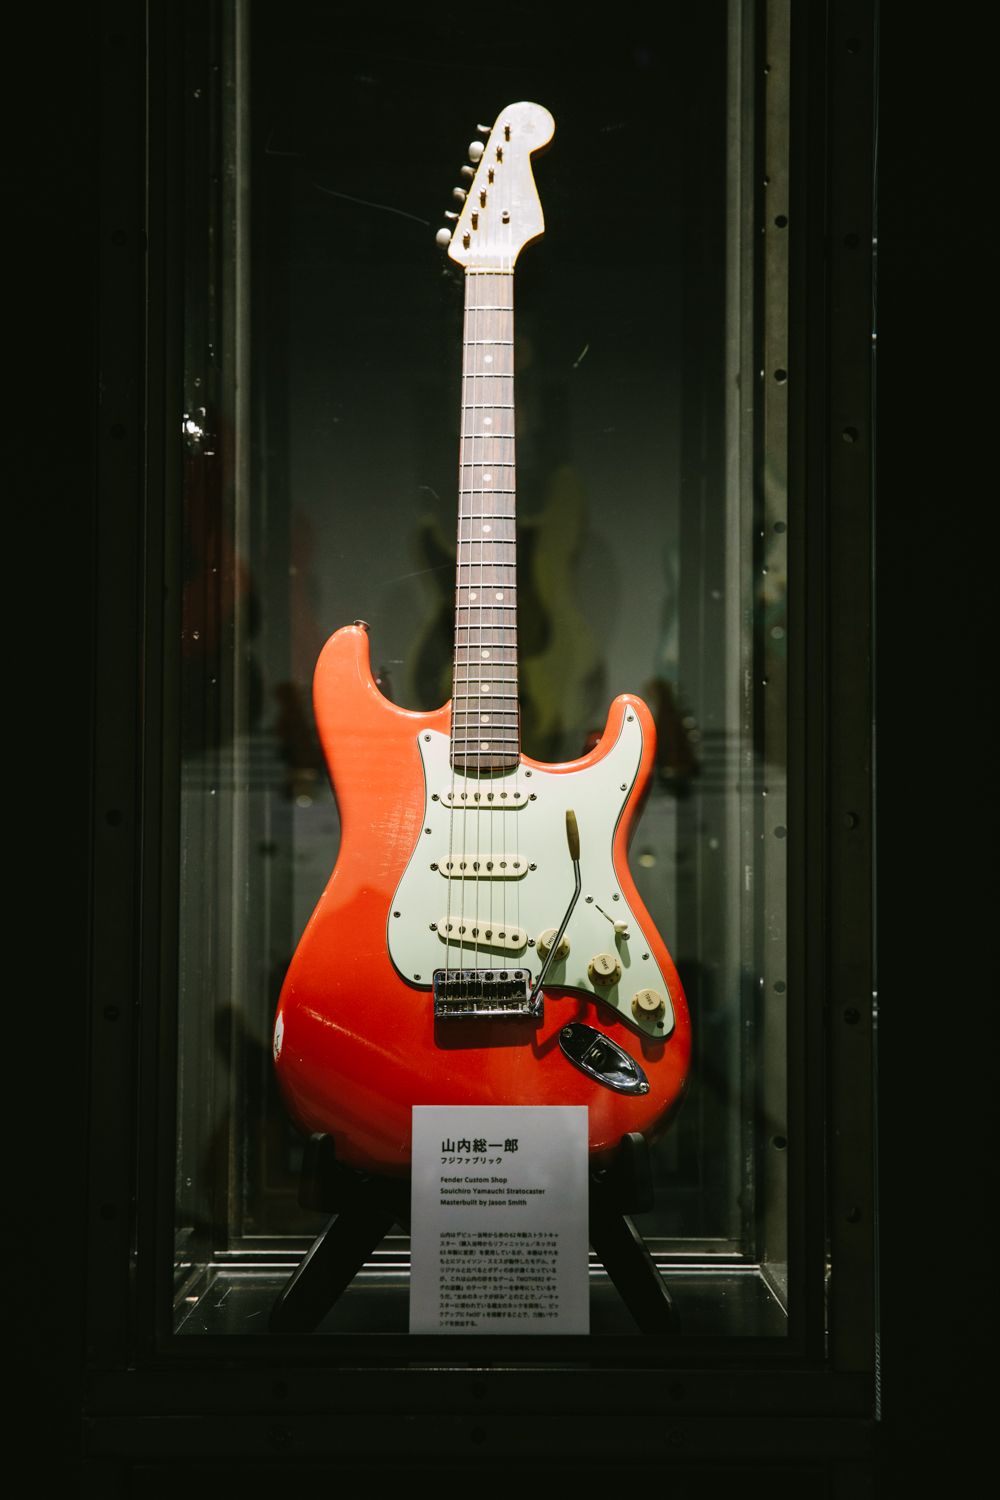 ファン垂涎の最新0本超が並ぶ Fender Custom Shop Experience ギター展示場